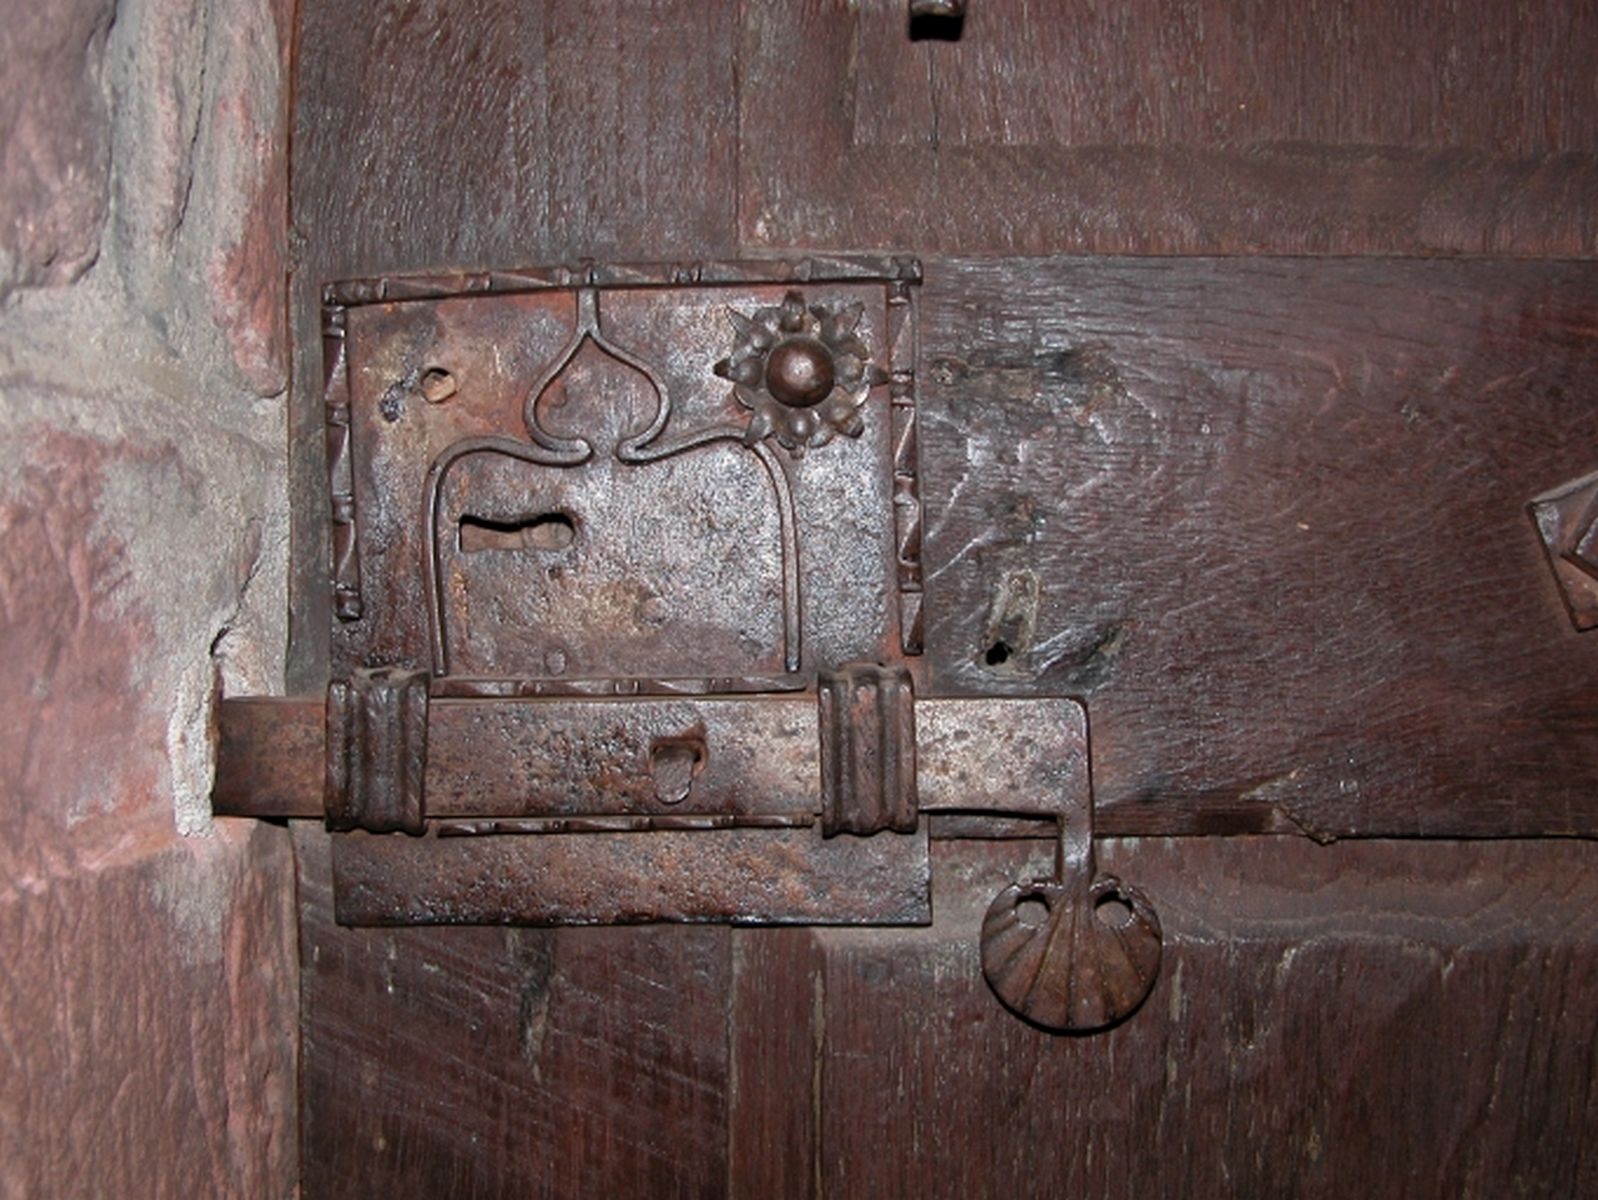 Détail de la serrure ciselée de la porte donnant accès au sommet de la tour.